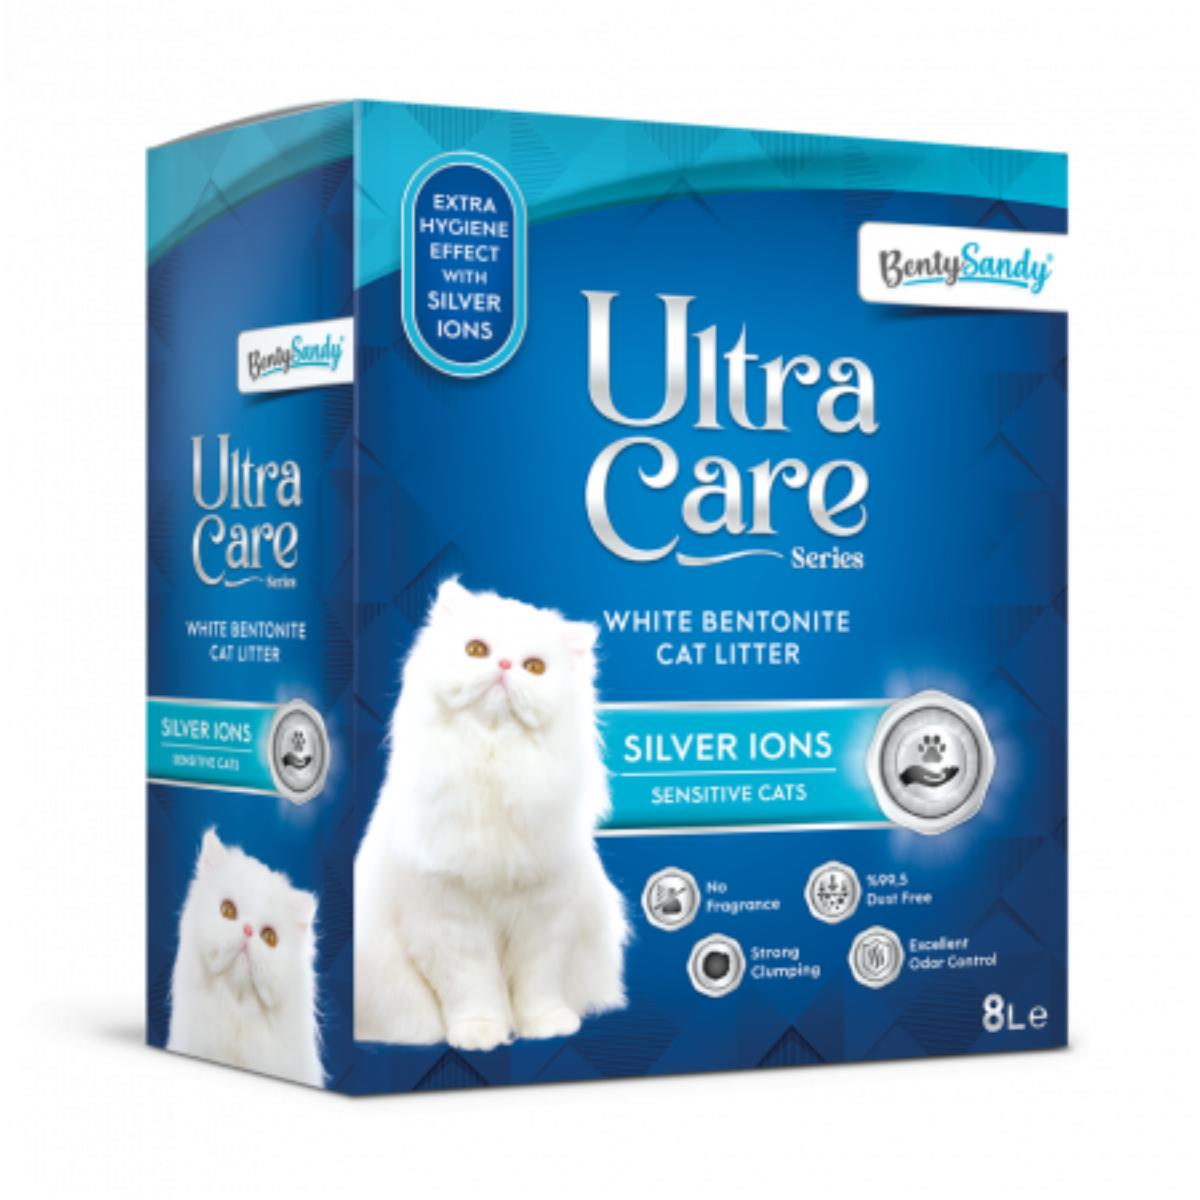 BENTY SANDY Ultra Care Sensitive Silver Ions, neparfumat, așternut igienic pisici, granule, bentonită, aglomerant, neutralizare mirosuri, 8l